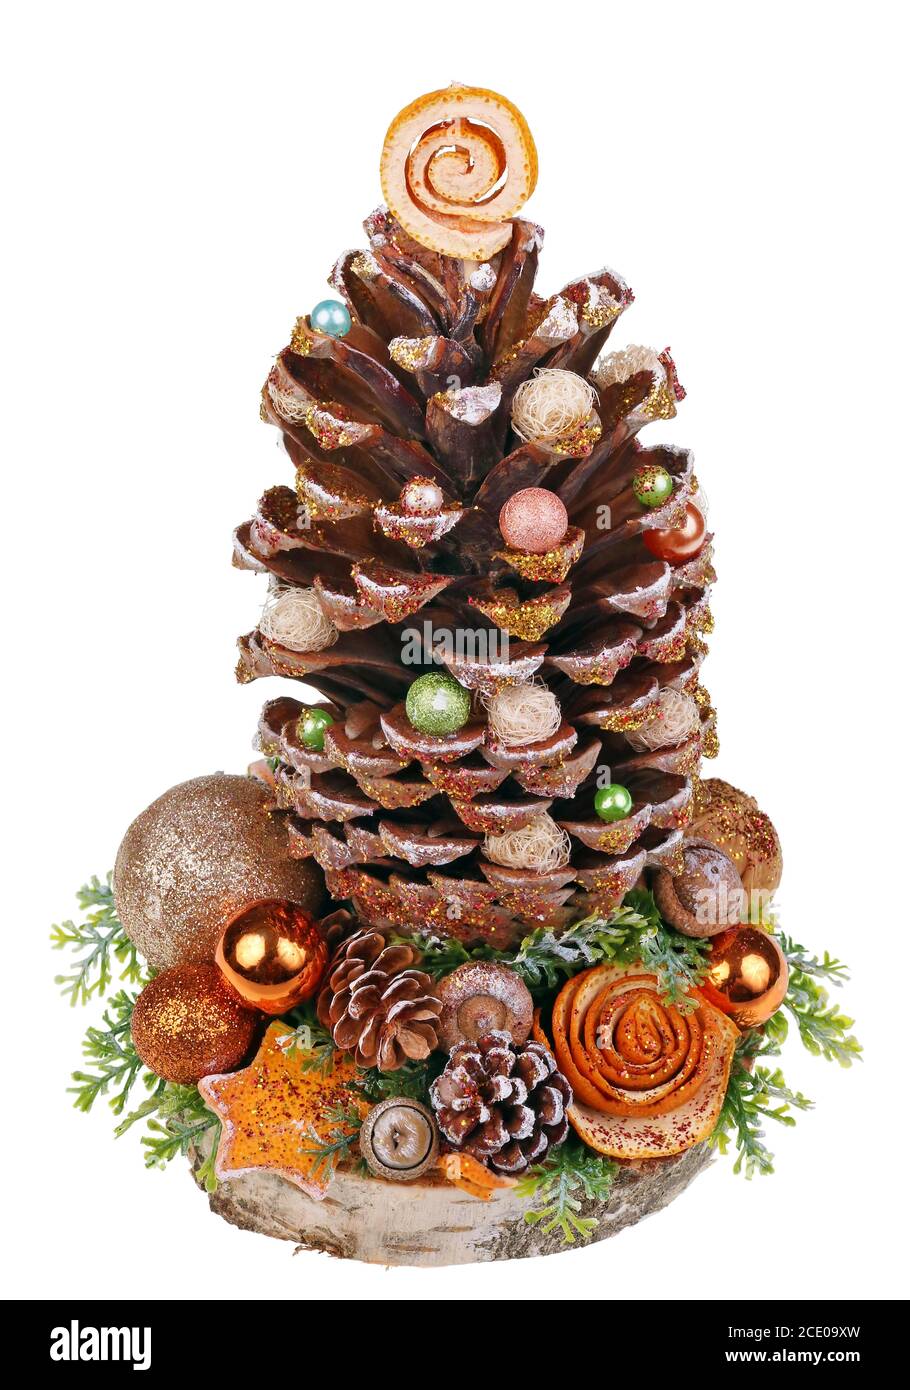 Árbol de decoración casera de Navidad en el estilo rural de color naranja hecho gran cono de madera de cedro europeo alpino bayas rojas perlas Foto de stock